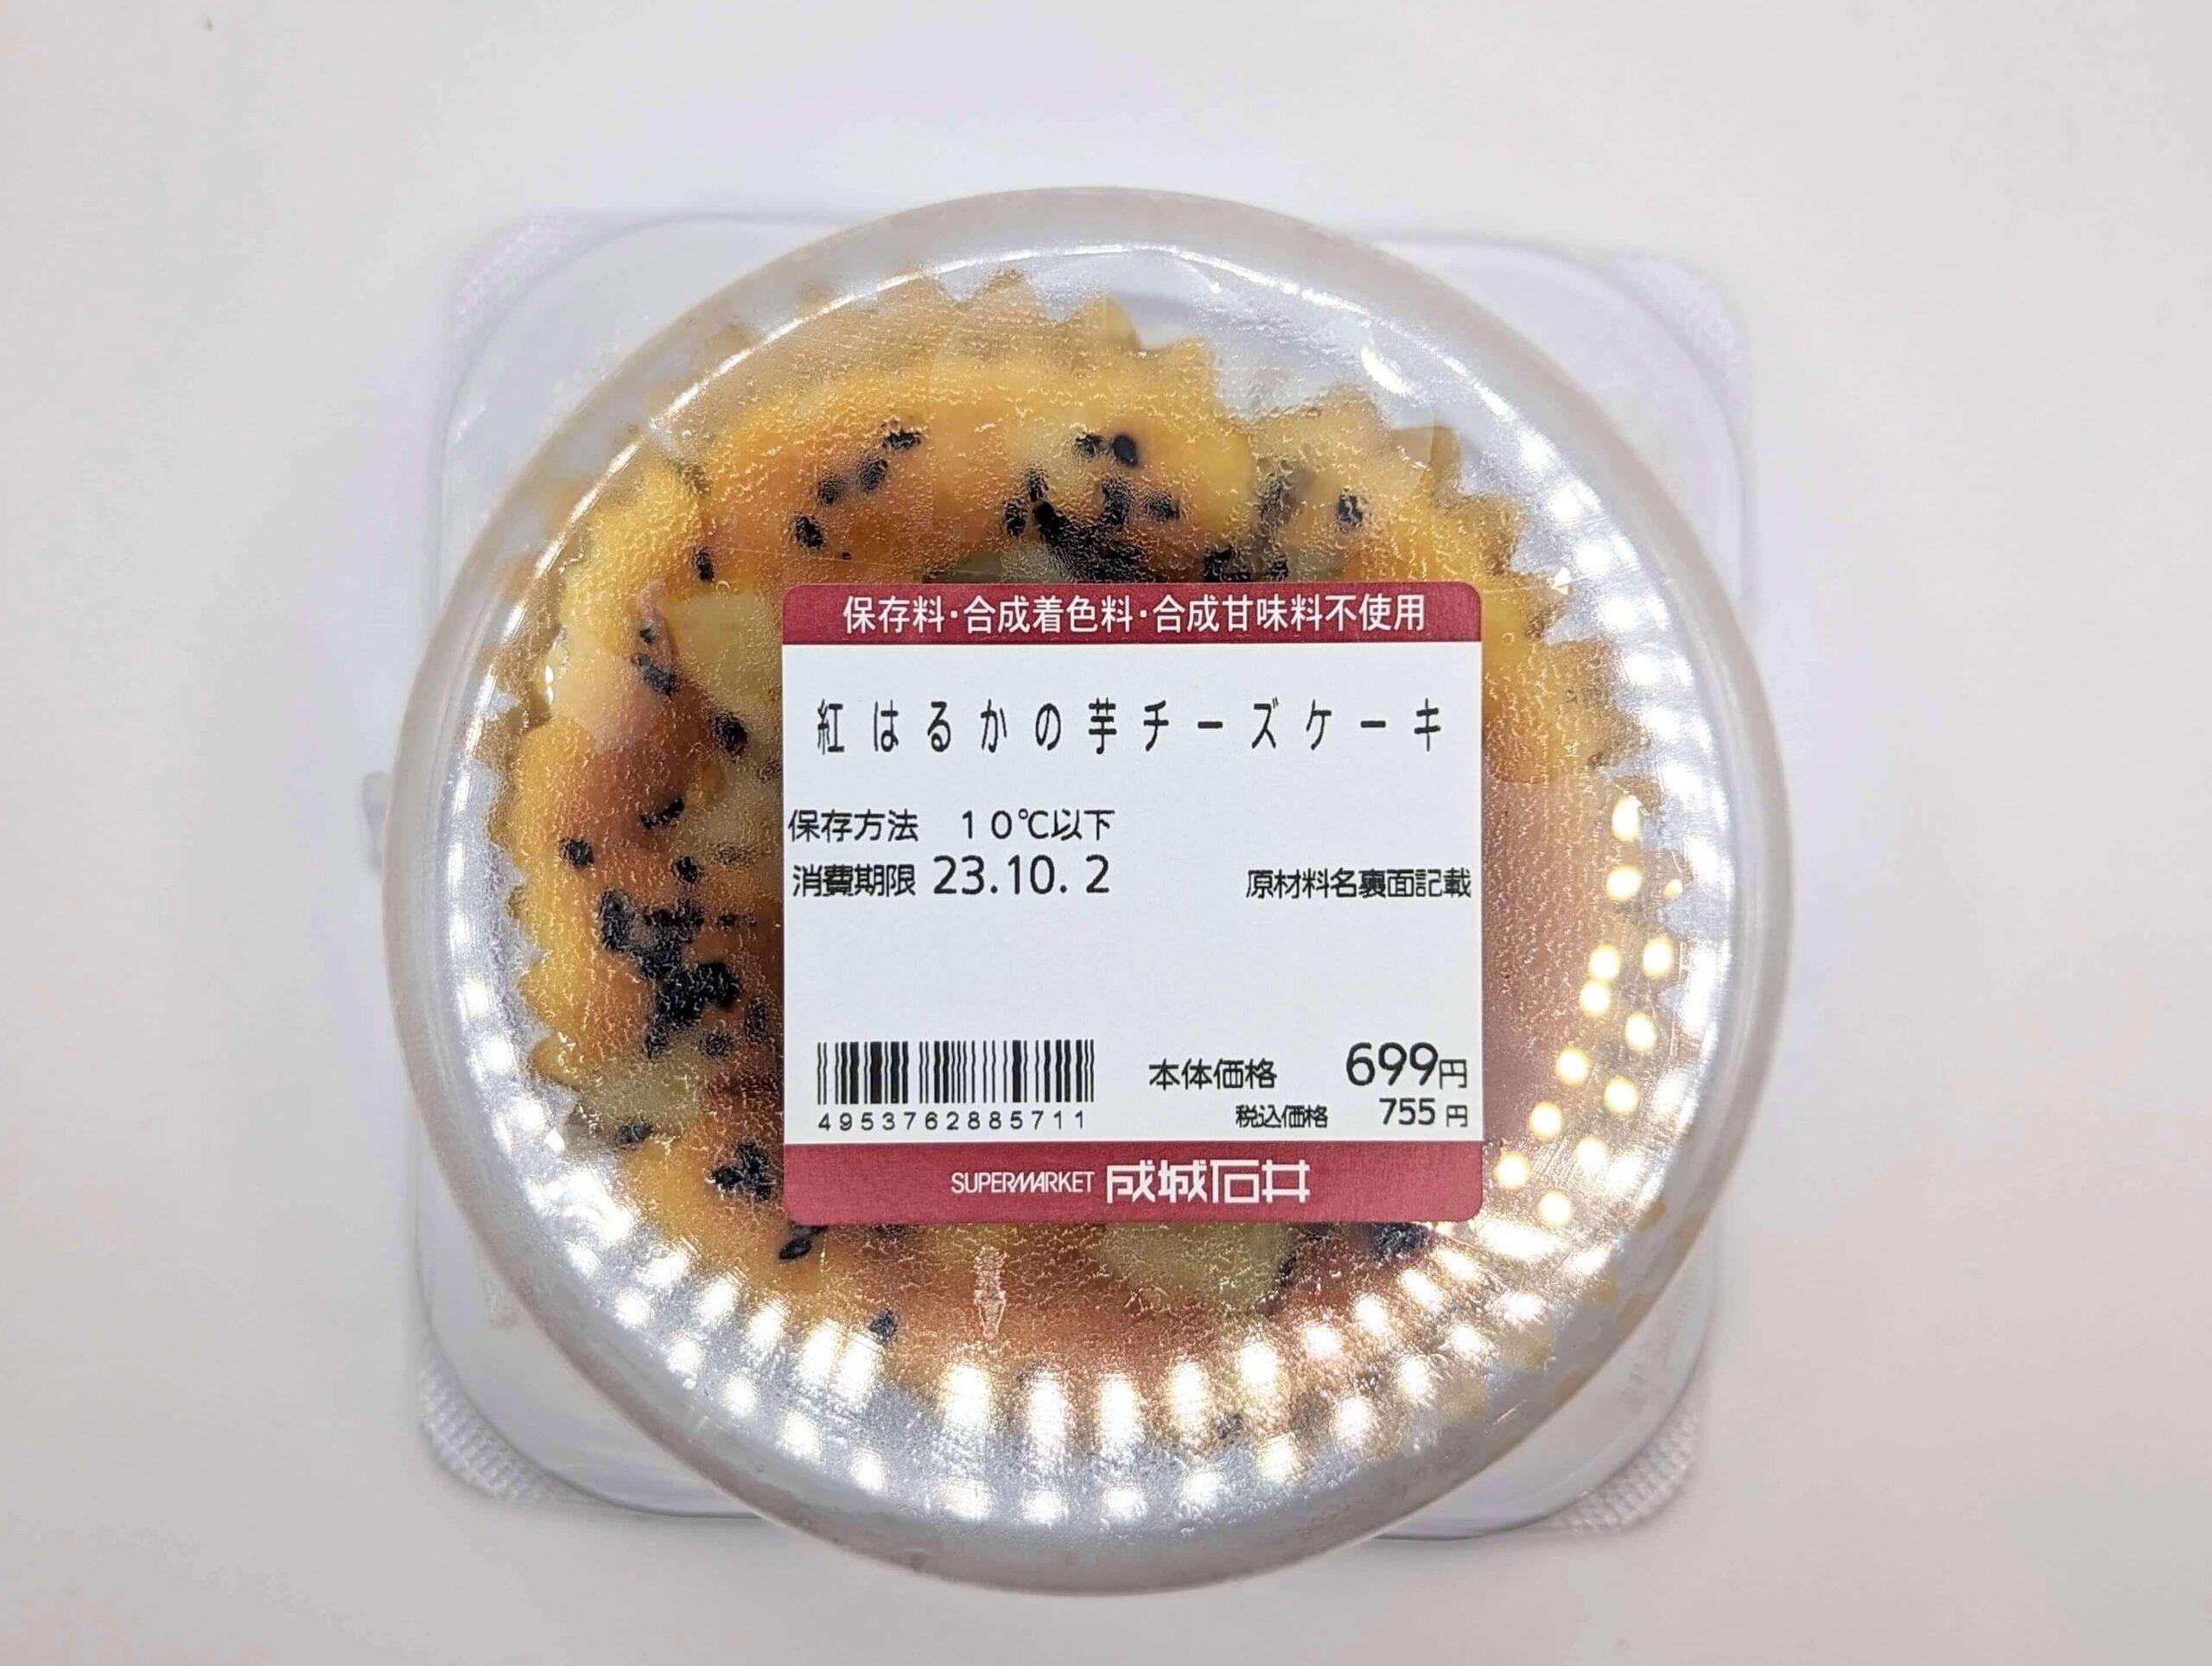 成城石井の「紅はるかの芋チーズケーキ」の写真 (3)